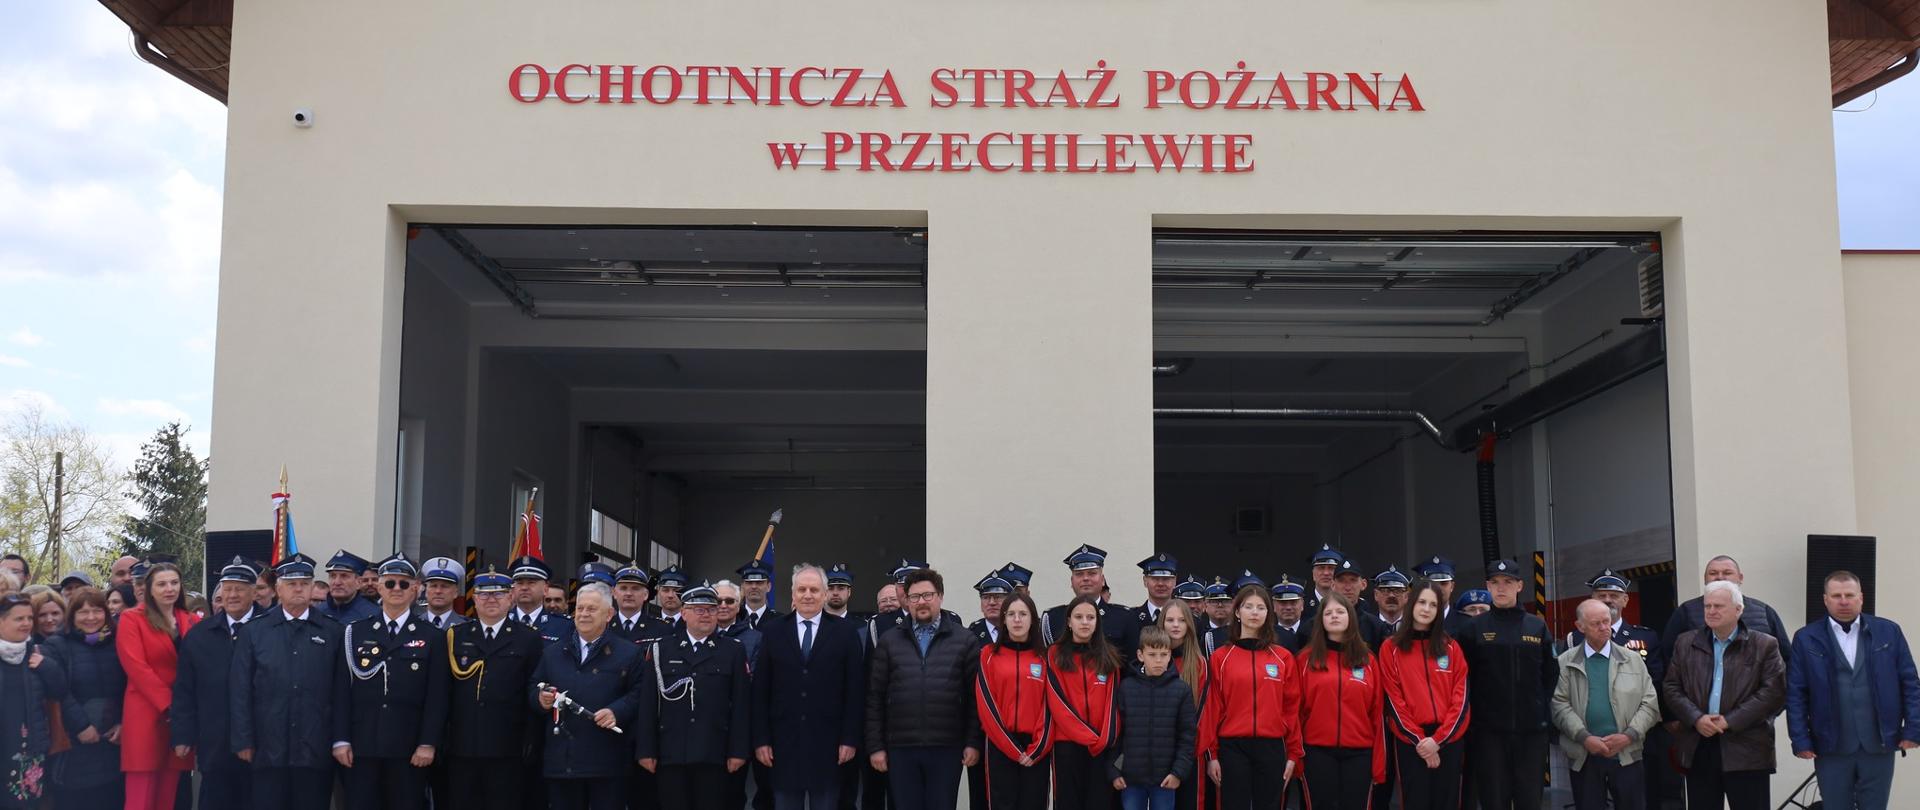 Zdjęcie grupowe uczestników uroczystego apelu z okazji otwarcia nowej remizy Ochotniczej Straży Pożarnej w Przechlewie. Goście i uczestnicy stoją przed budynkiem nowej remizy.